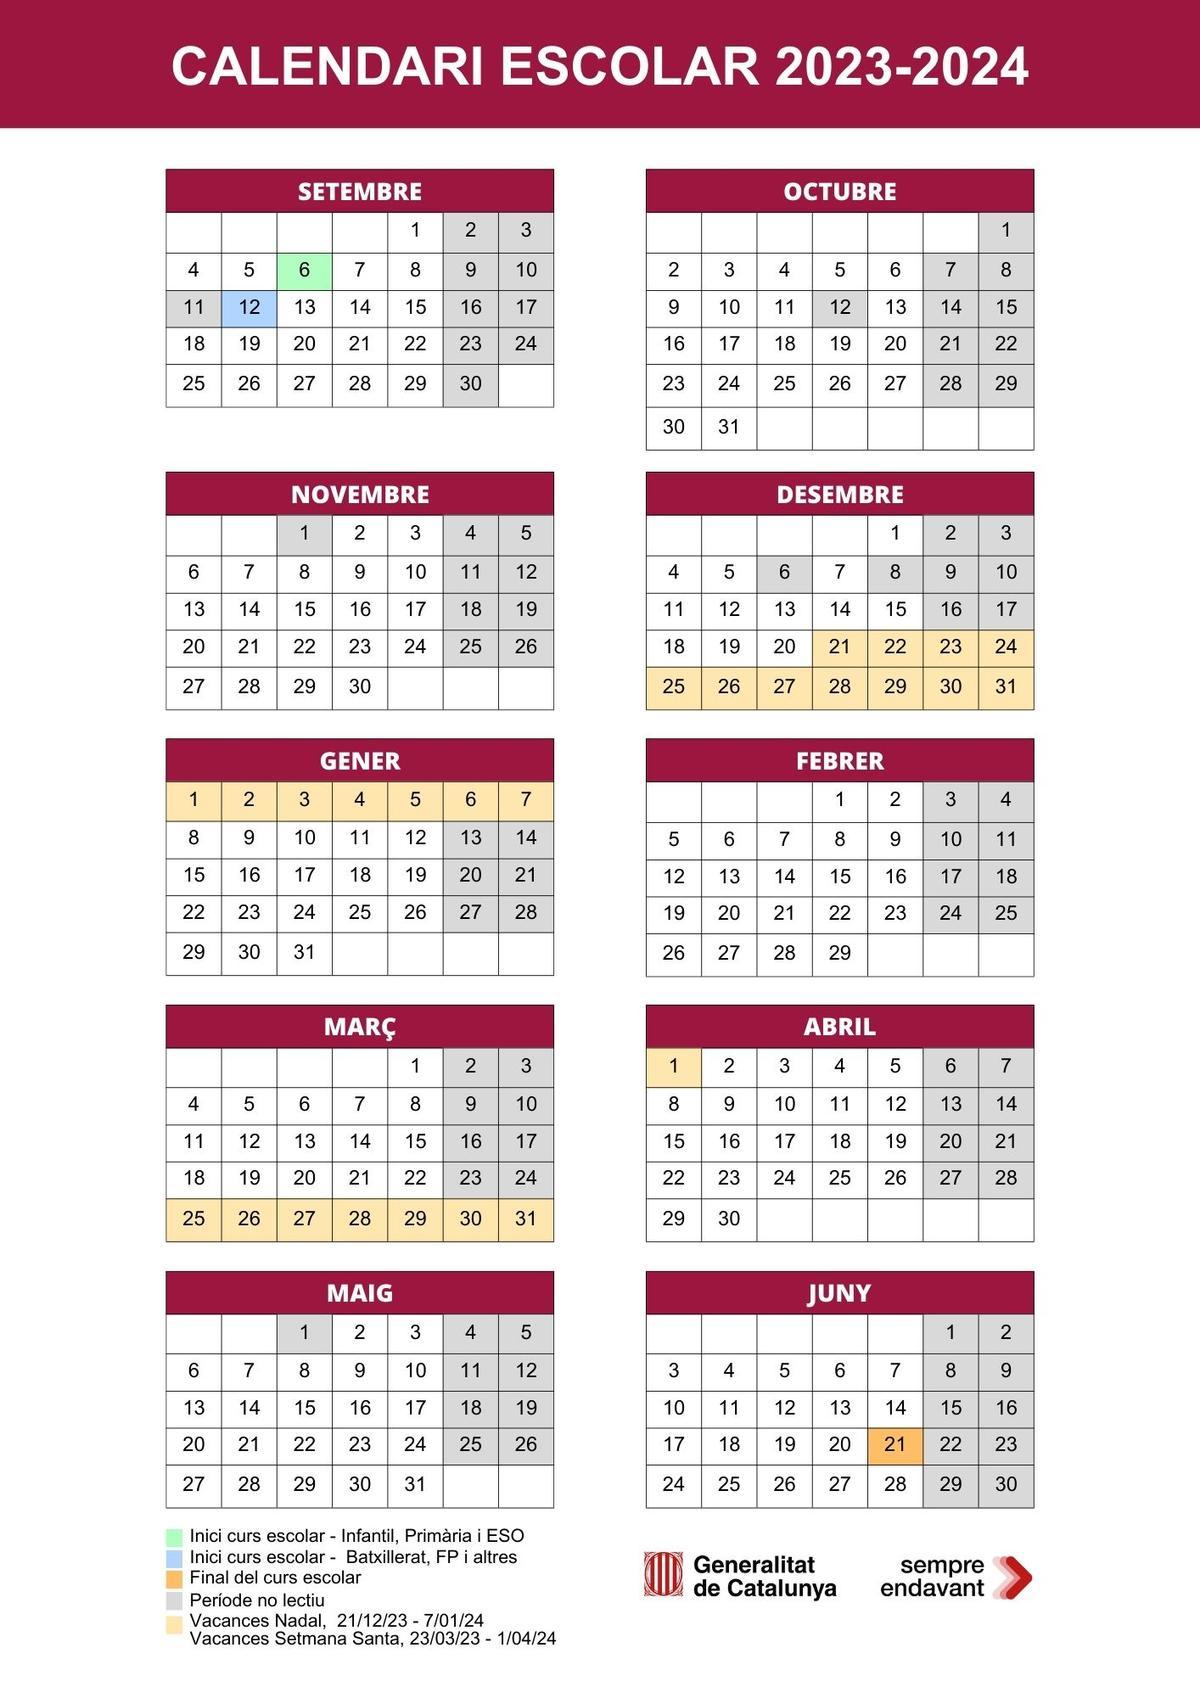 El calendari escolar per al curs 2023-2024